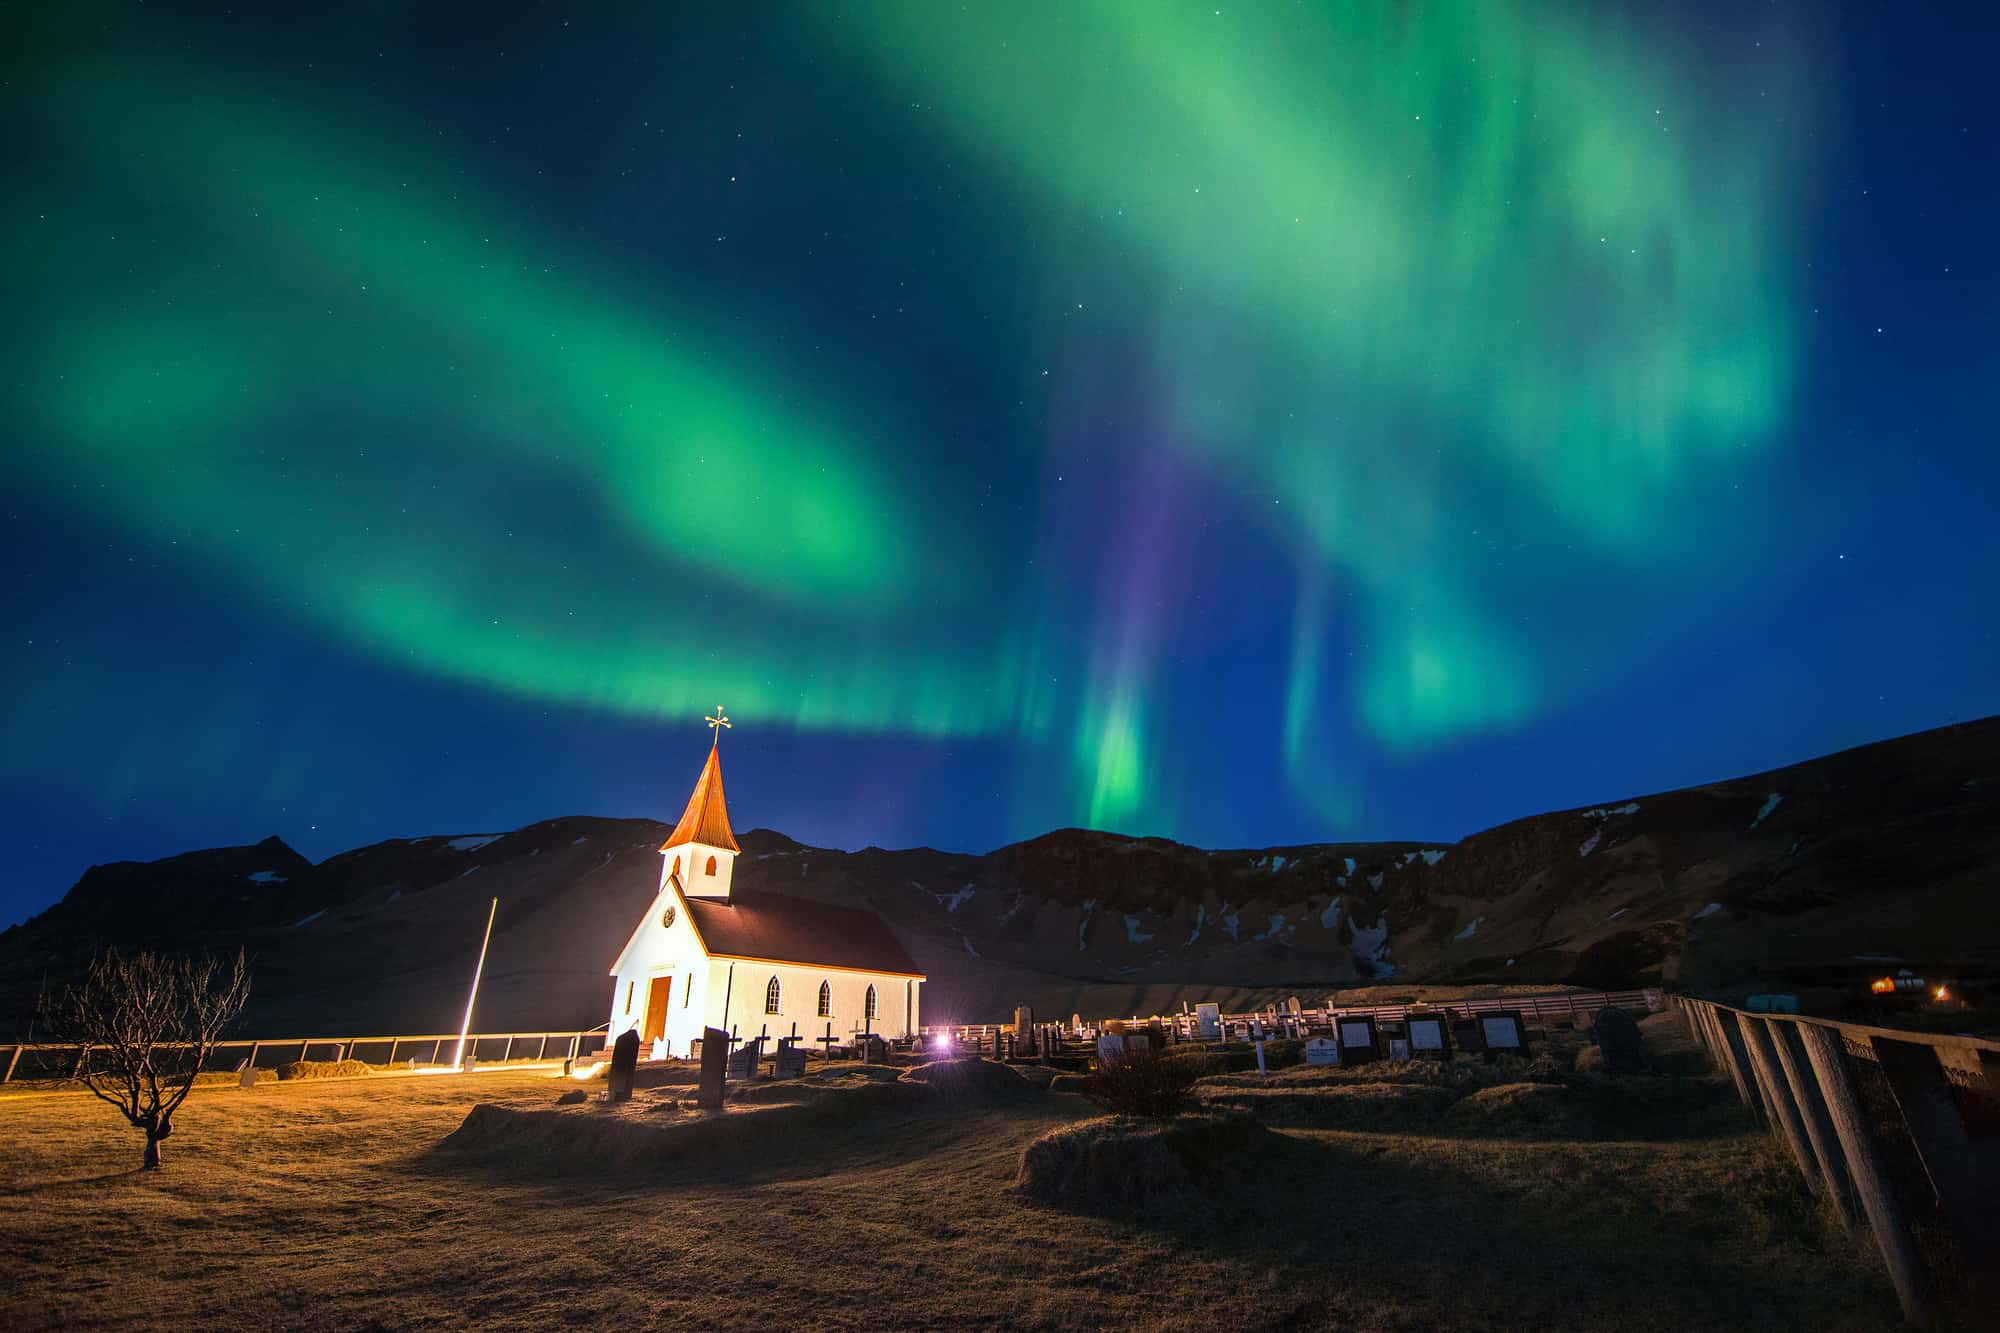 Vik i Myrdal Church And Aurora Borealis In Vik, Iceland.